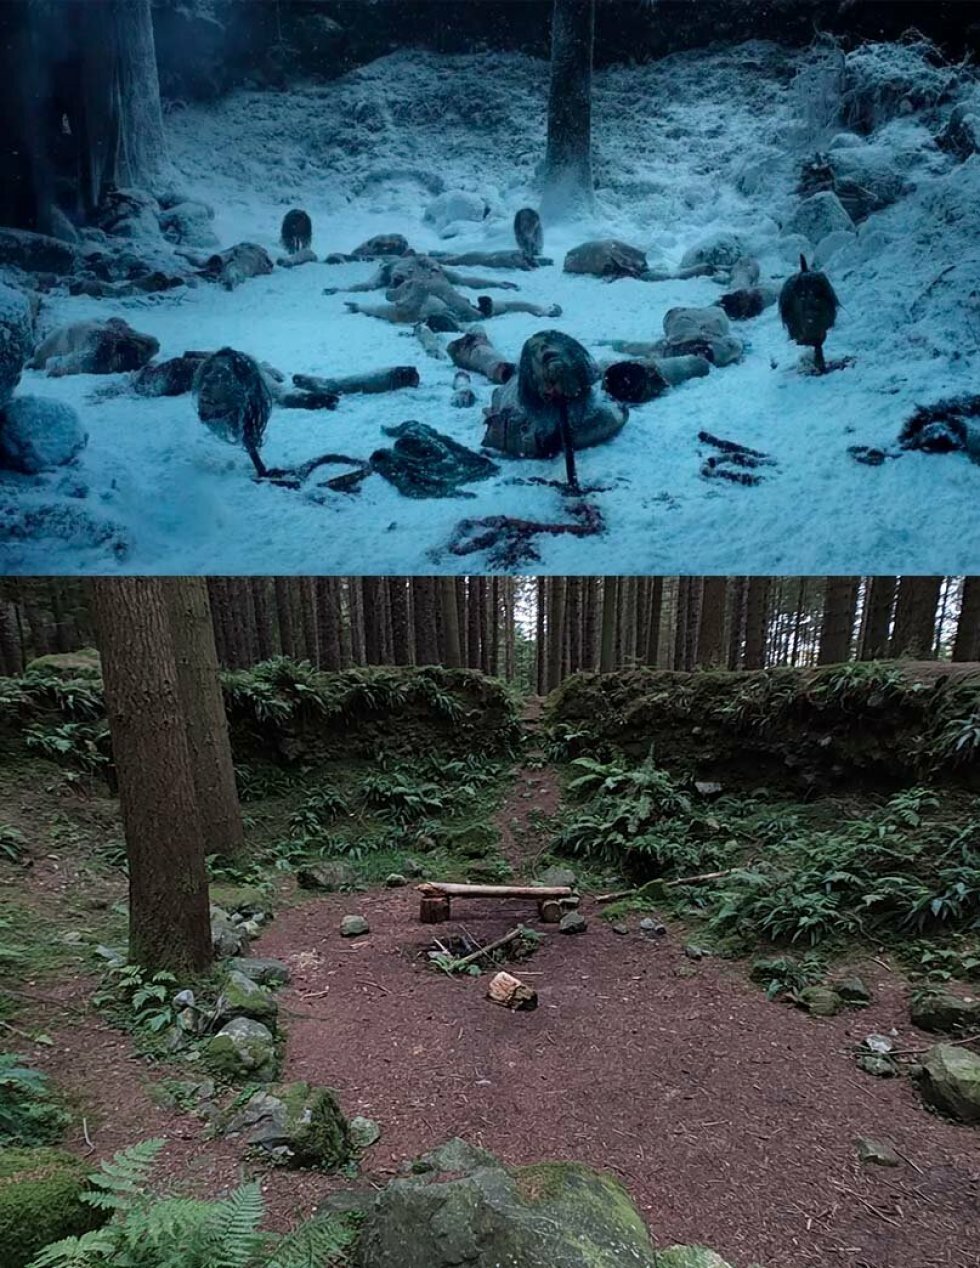 Øverst, Game of Thrones, S1 - HBO - Nederst: Tollymore Forest-lokation IRL - Rejseguide: Nordirland den ultimative Game of Thrones-destination